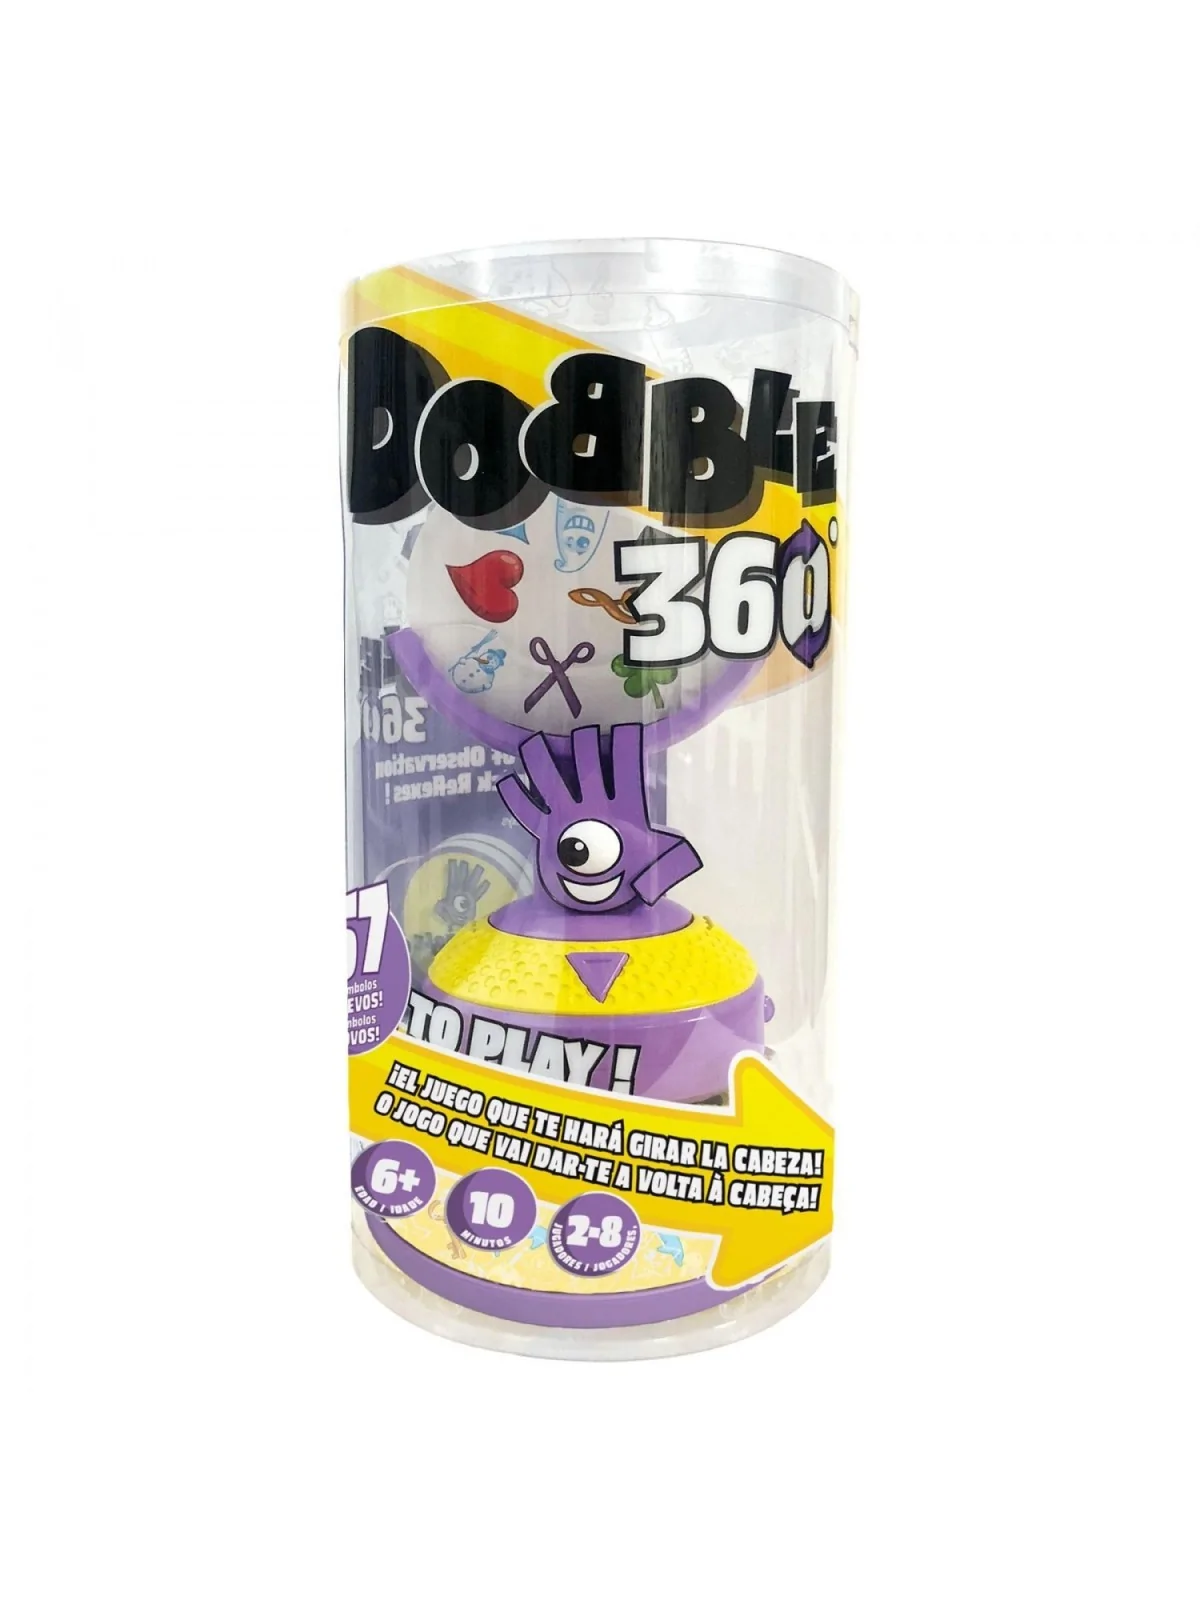 Comprar Dobble 360 barato al mejor precio 25,95 € de Zygomatic